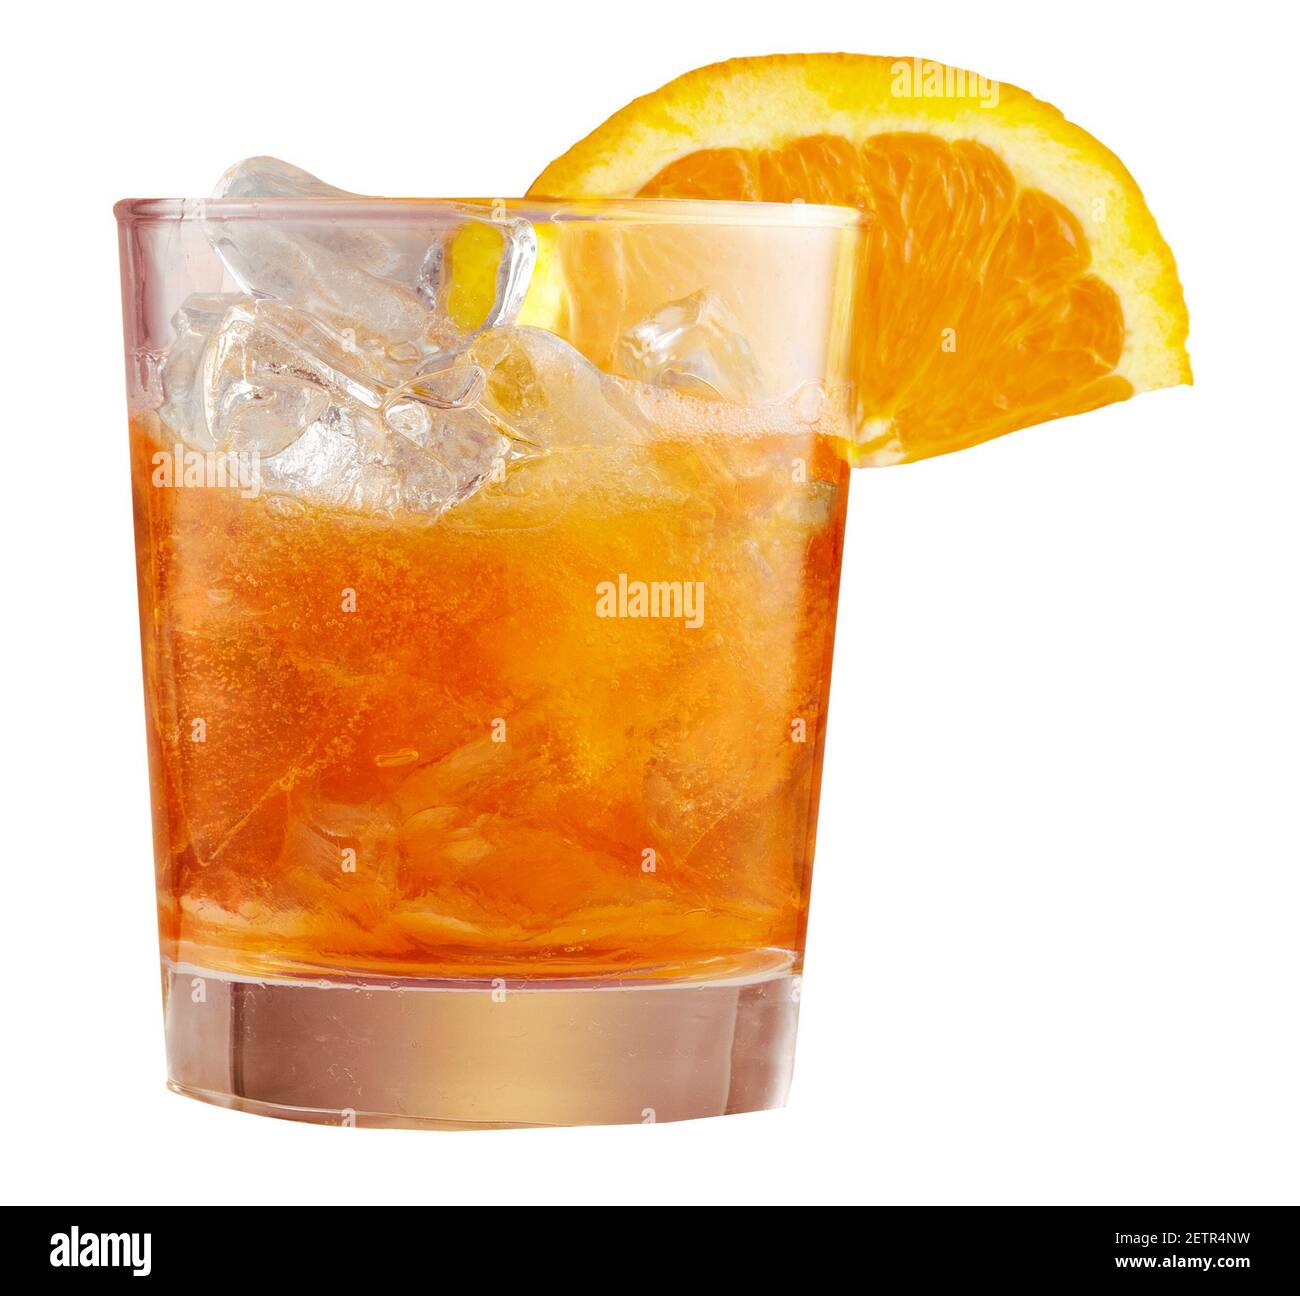 Verre de glace apéritif servi en verre, décoré de tranches d'orange. Apéritif, isolé sur fond blanc Banque D'Images